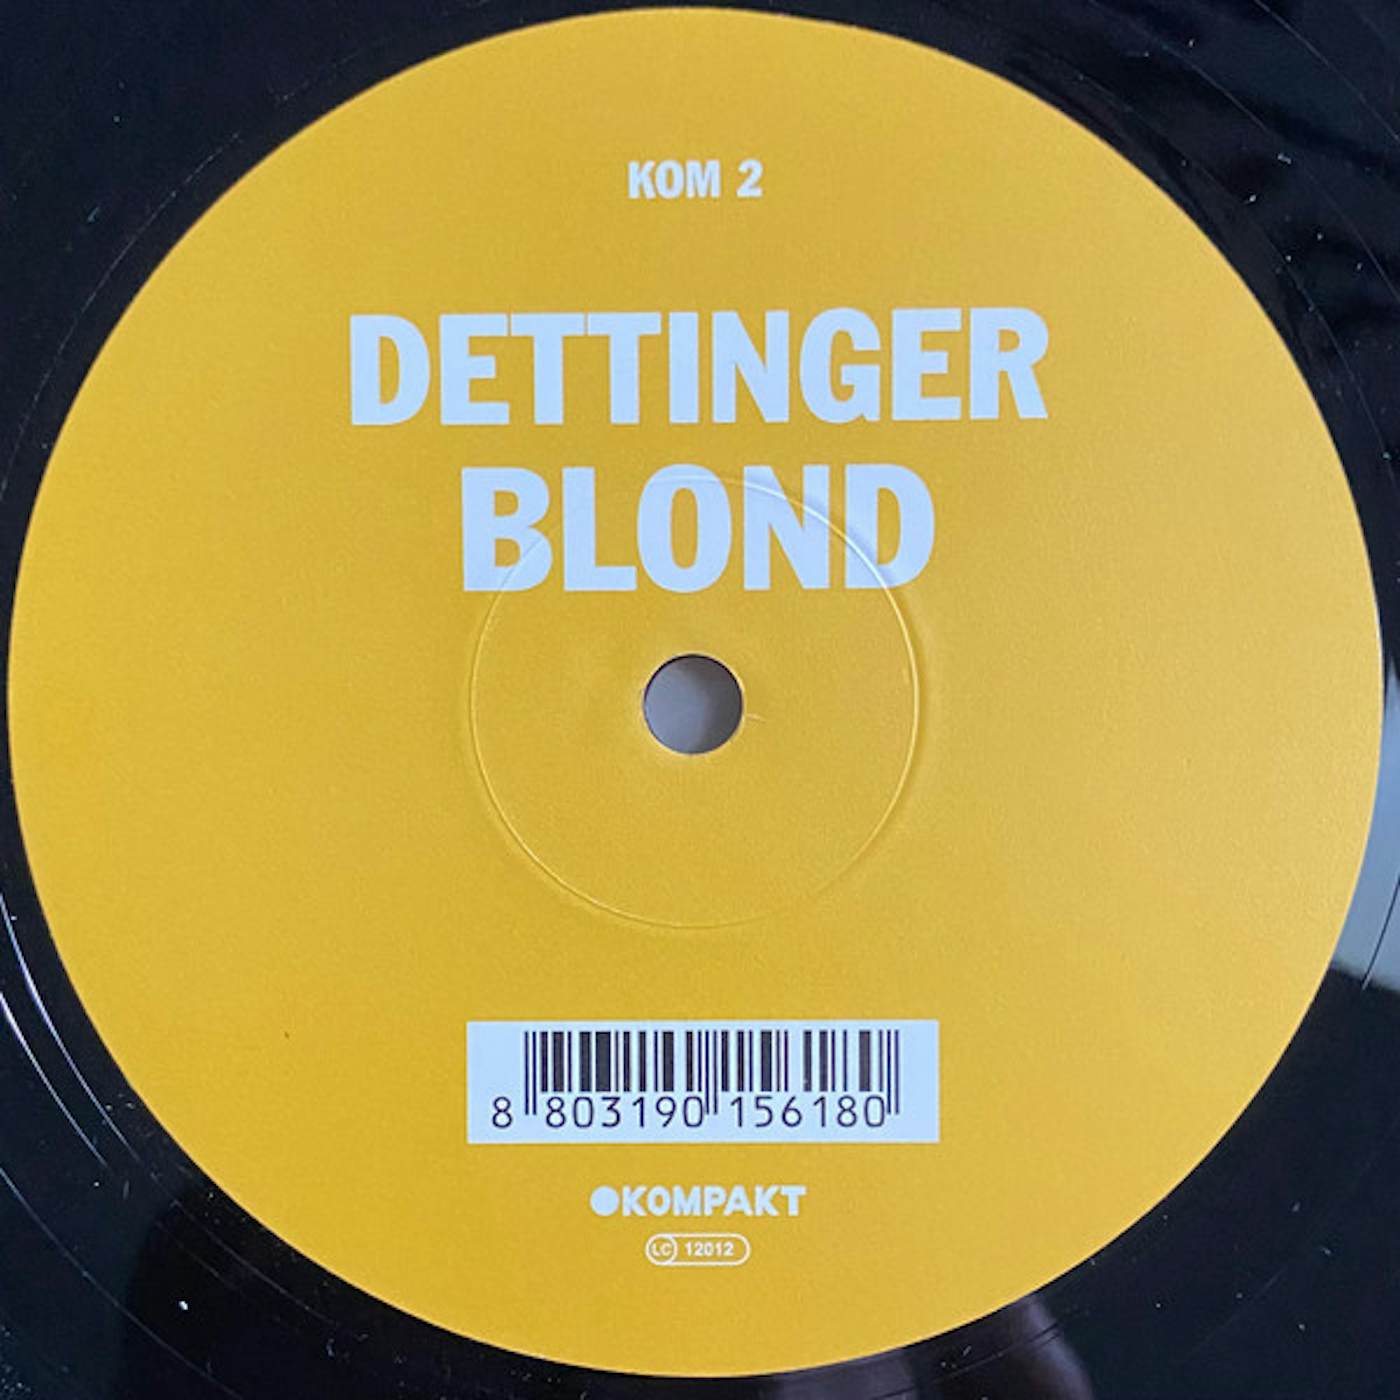 Dettinger Blond Vinyl Record